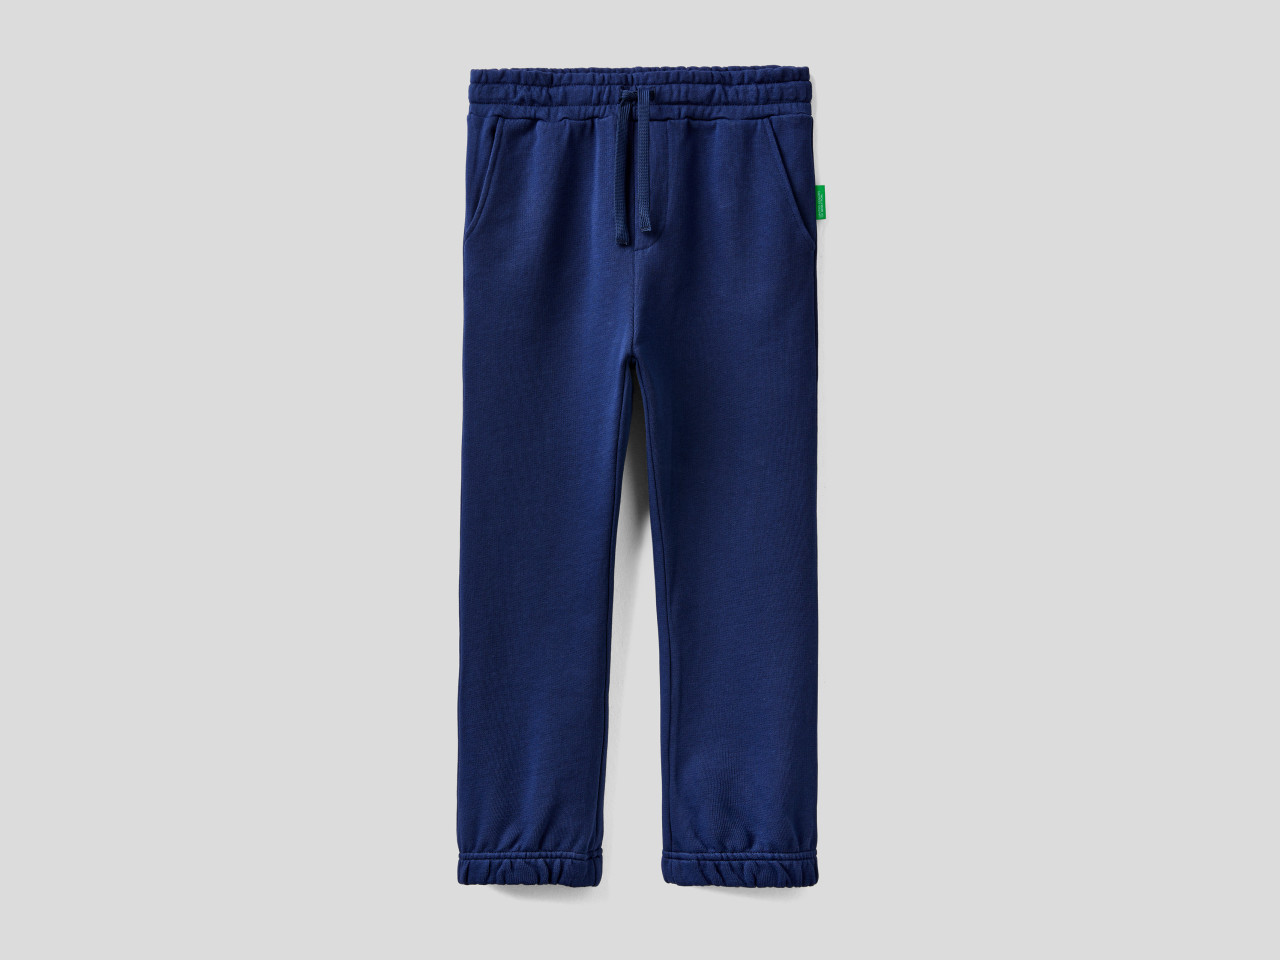 Pantalon chandal de niño – Tienda de Ropa Infantil online – Calabuch